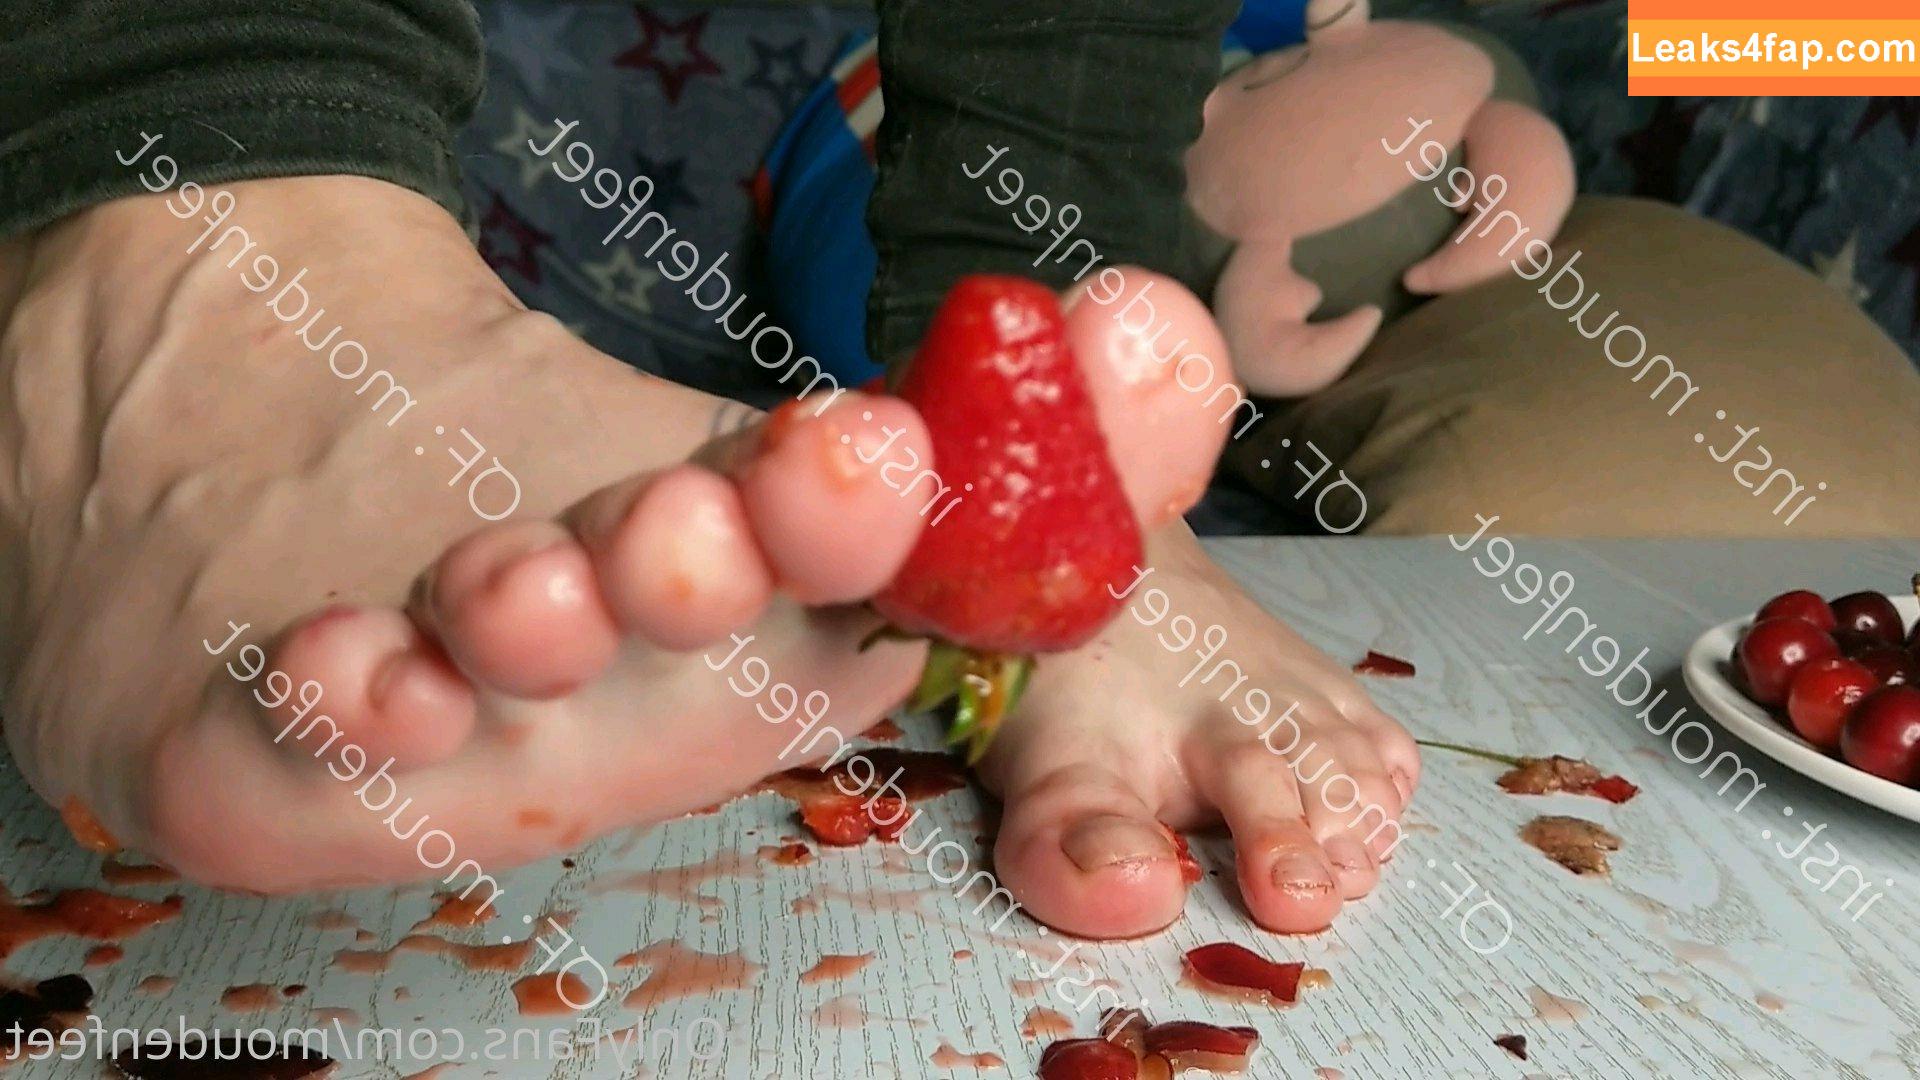 moudenfeet / mouden.feet leaked photo photo #0002